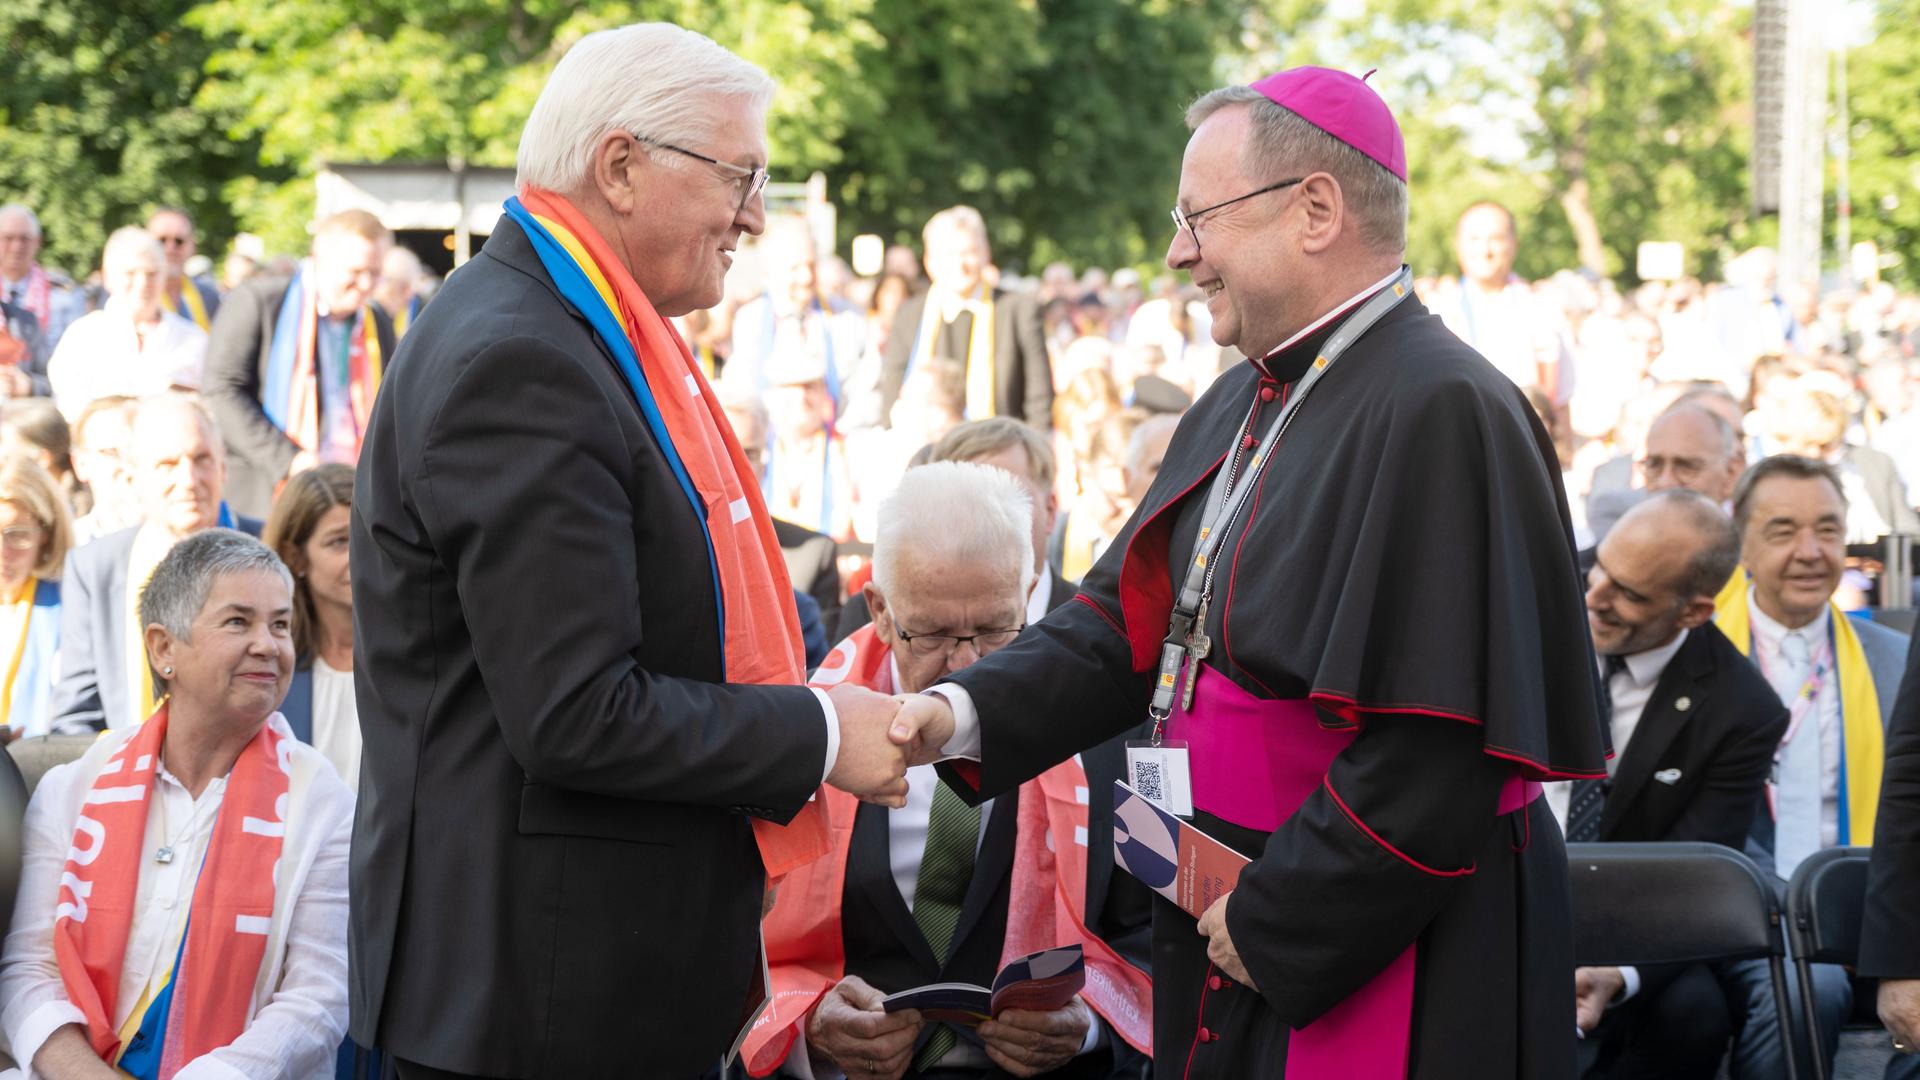 Bundespräsident Steinmeier und der Vorsitzende von der Deutschen Bischofs-Konferenz, Bätzing, geben sich die Hand.